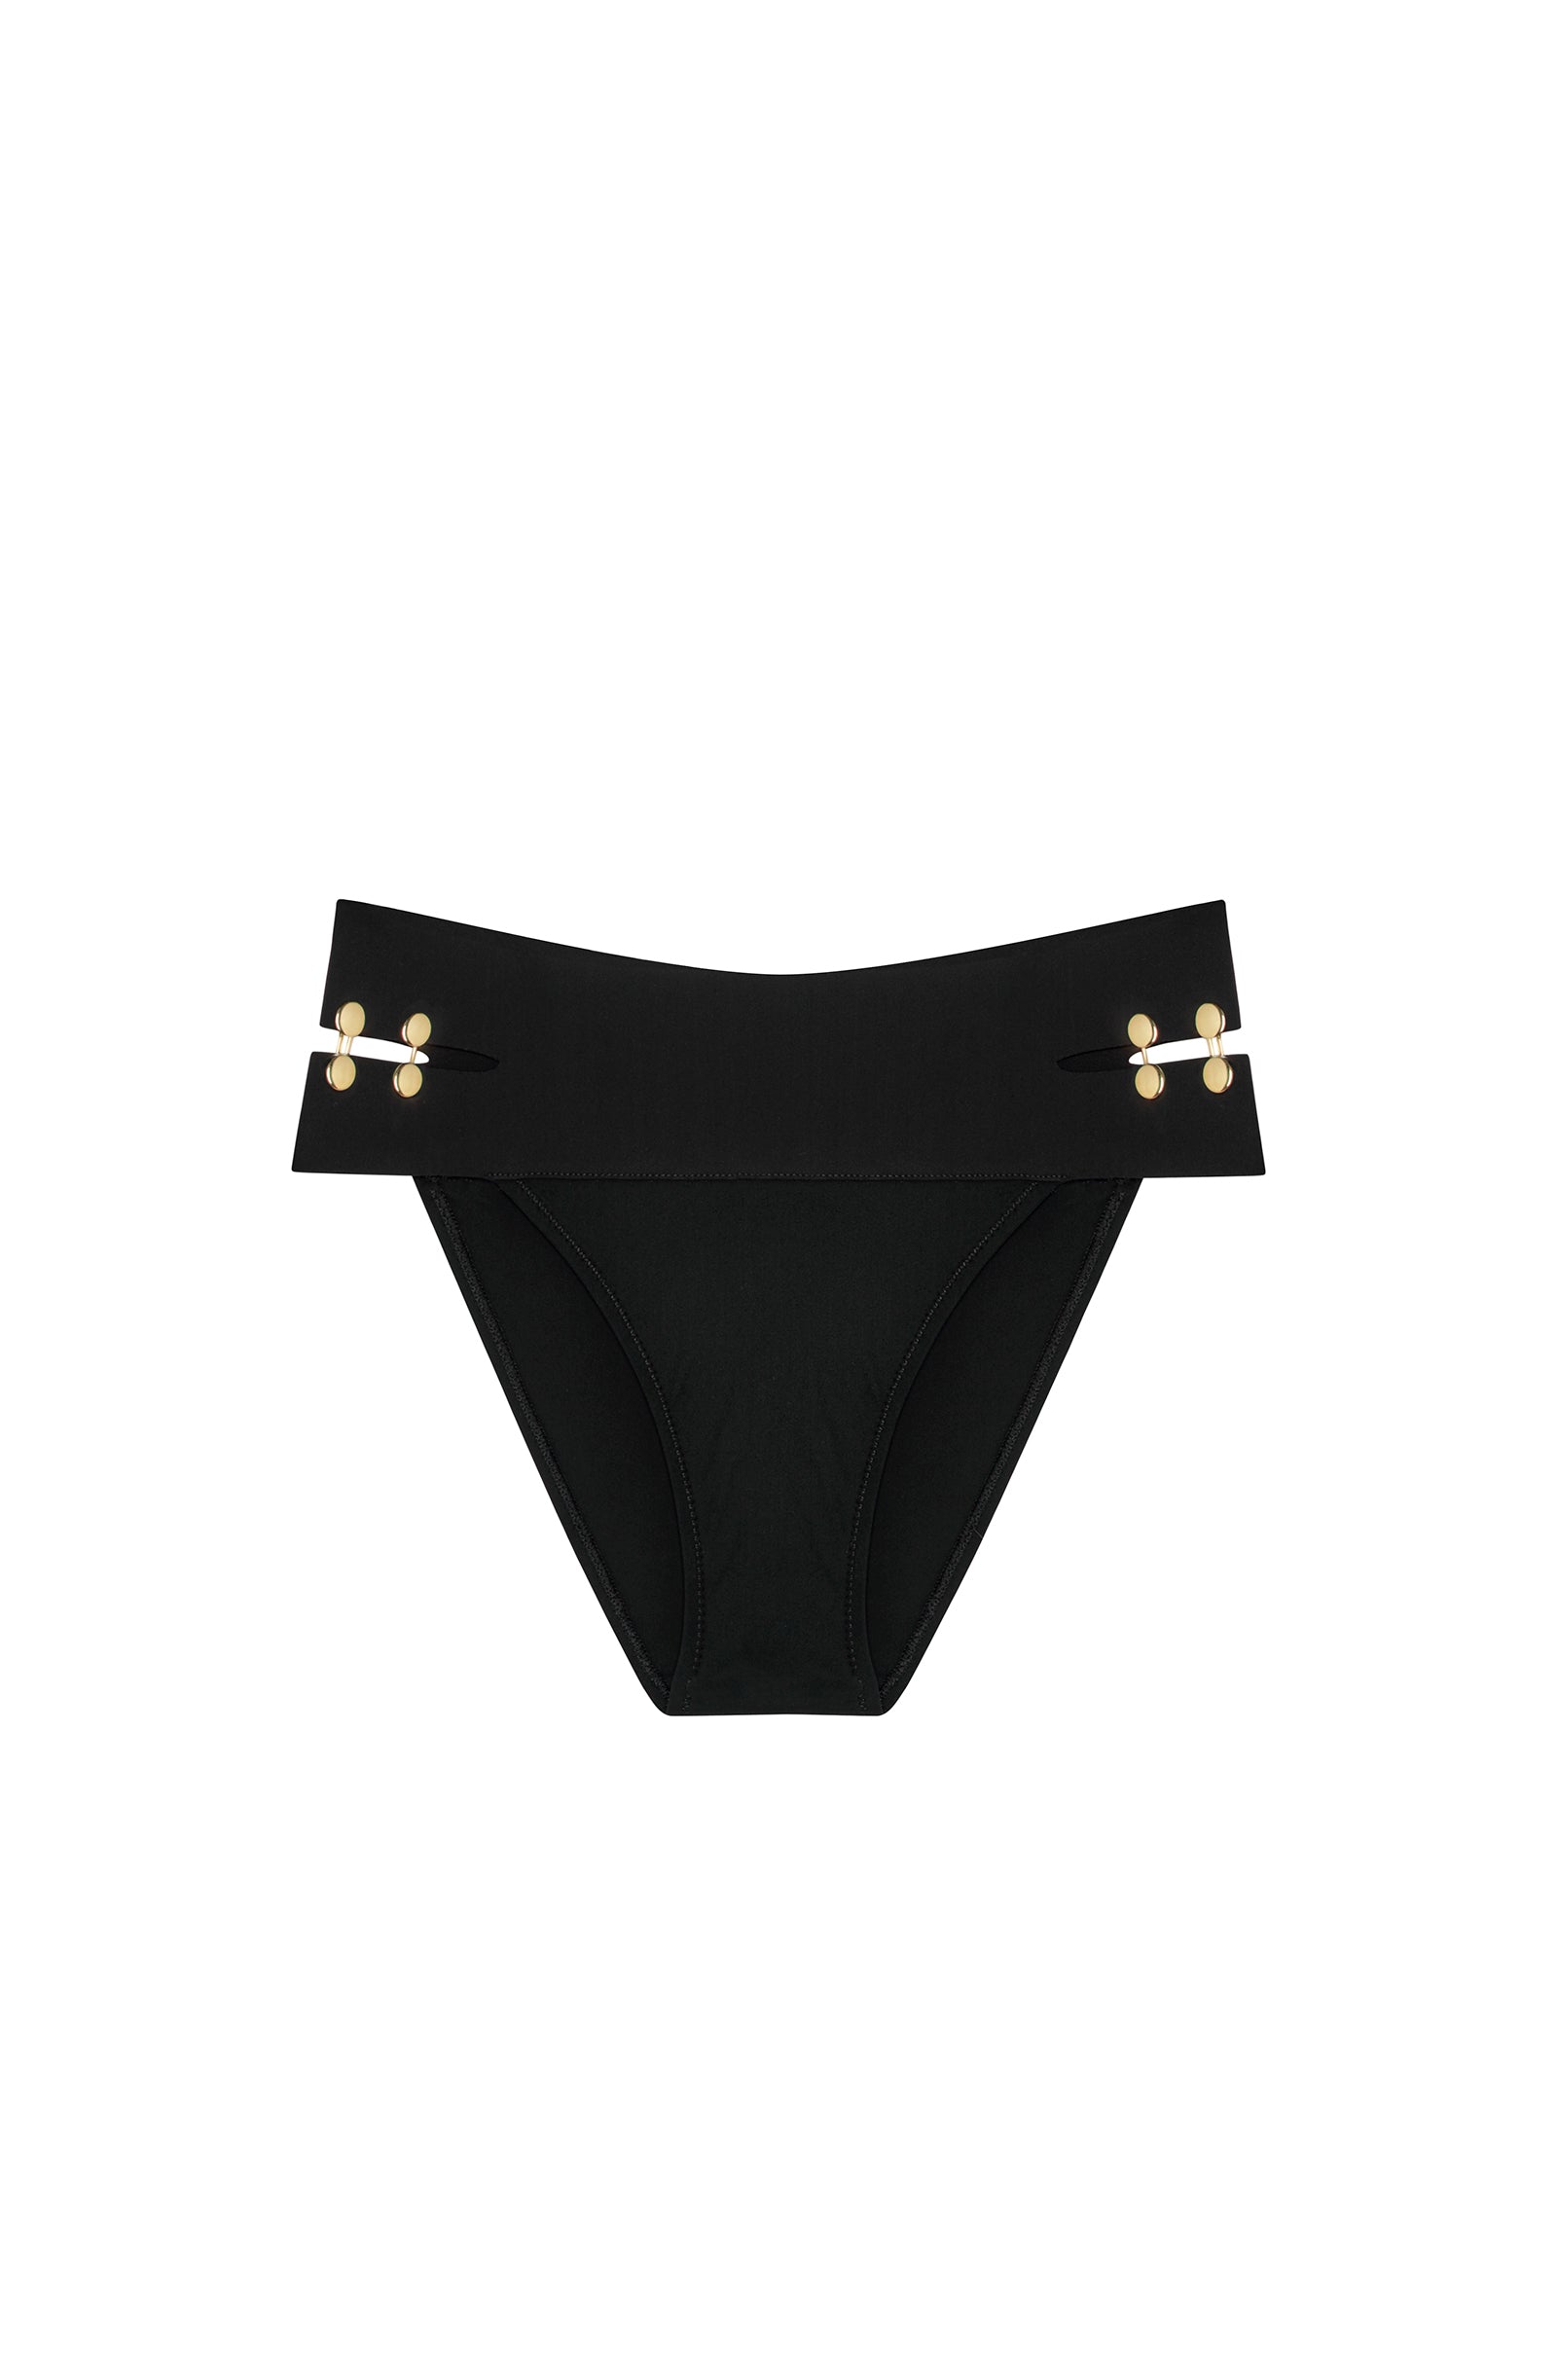 viny - Black openwork jewel bikini bottoms